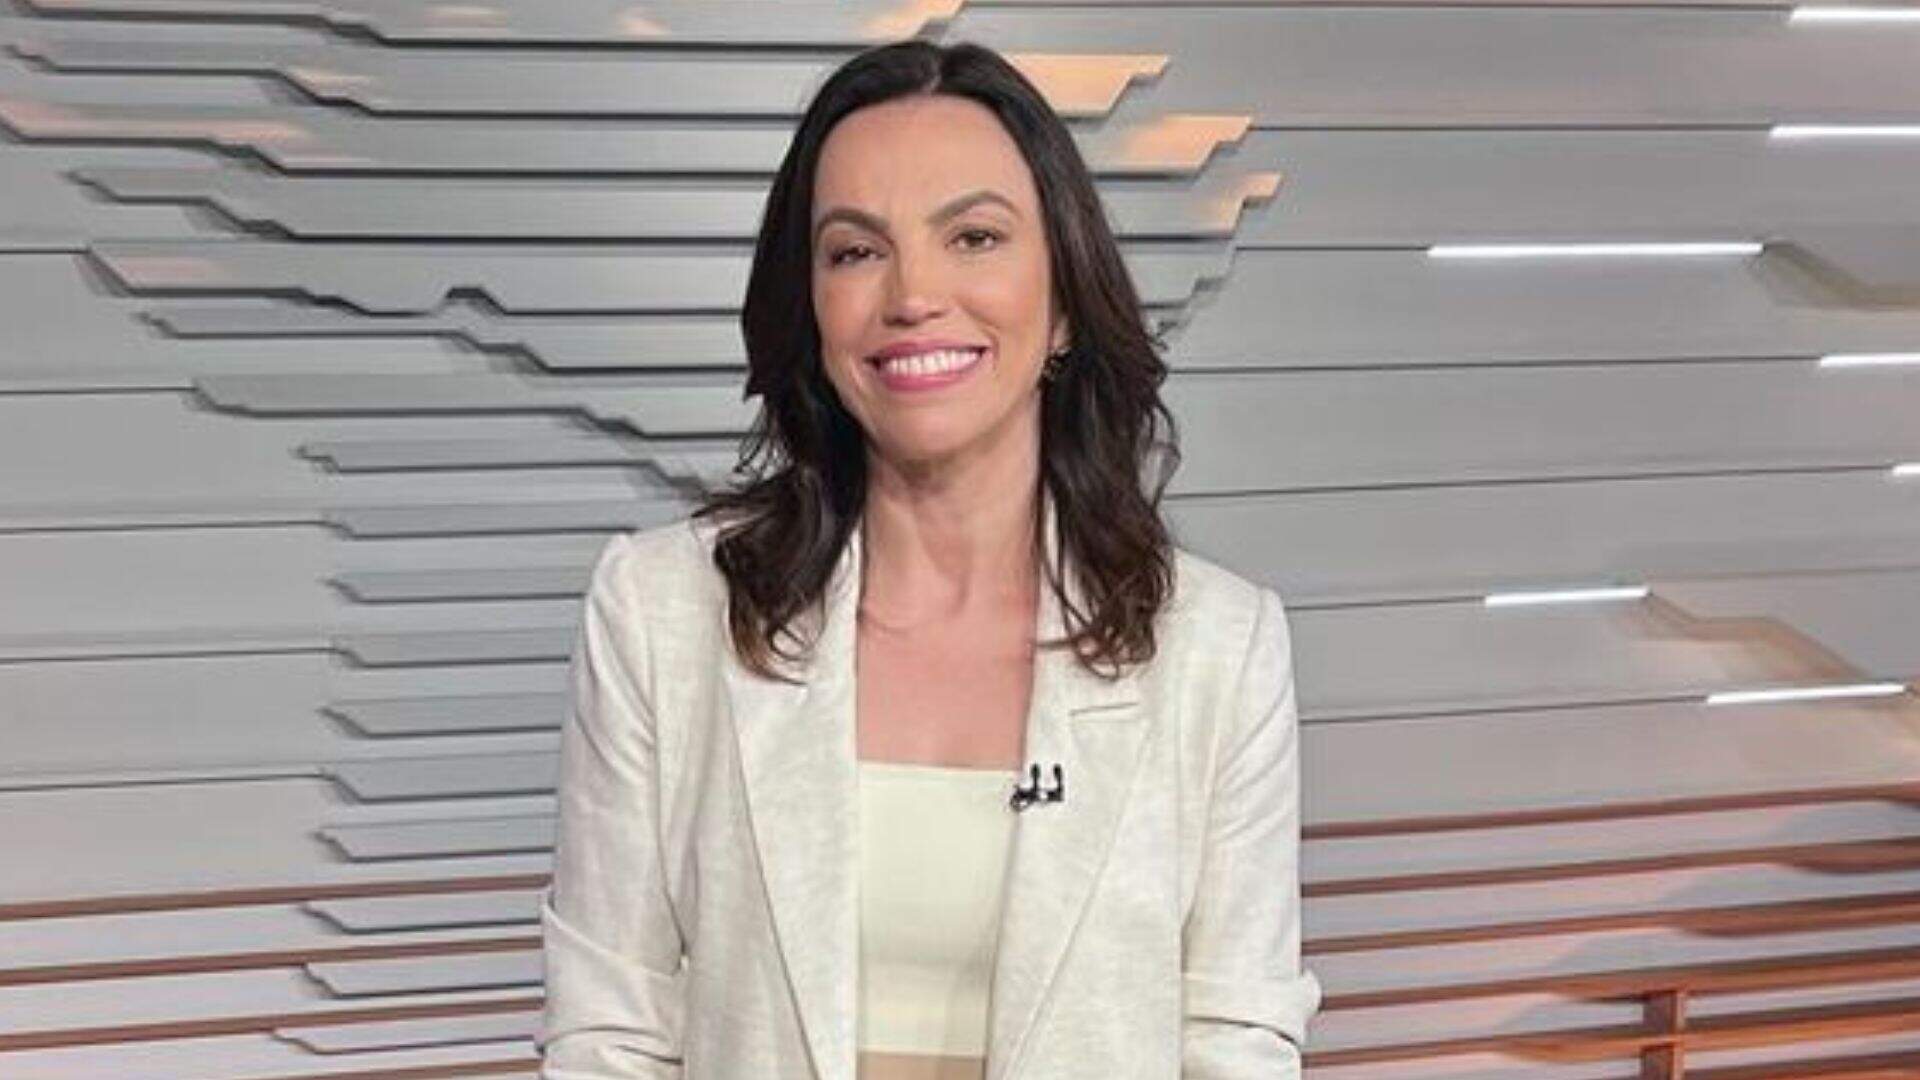 Ana Paula Araújo aposta em look diferentão para apresentar o “Bom Dia Brasil” e deixa telespectadores confusos: “Barriga de fora?”